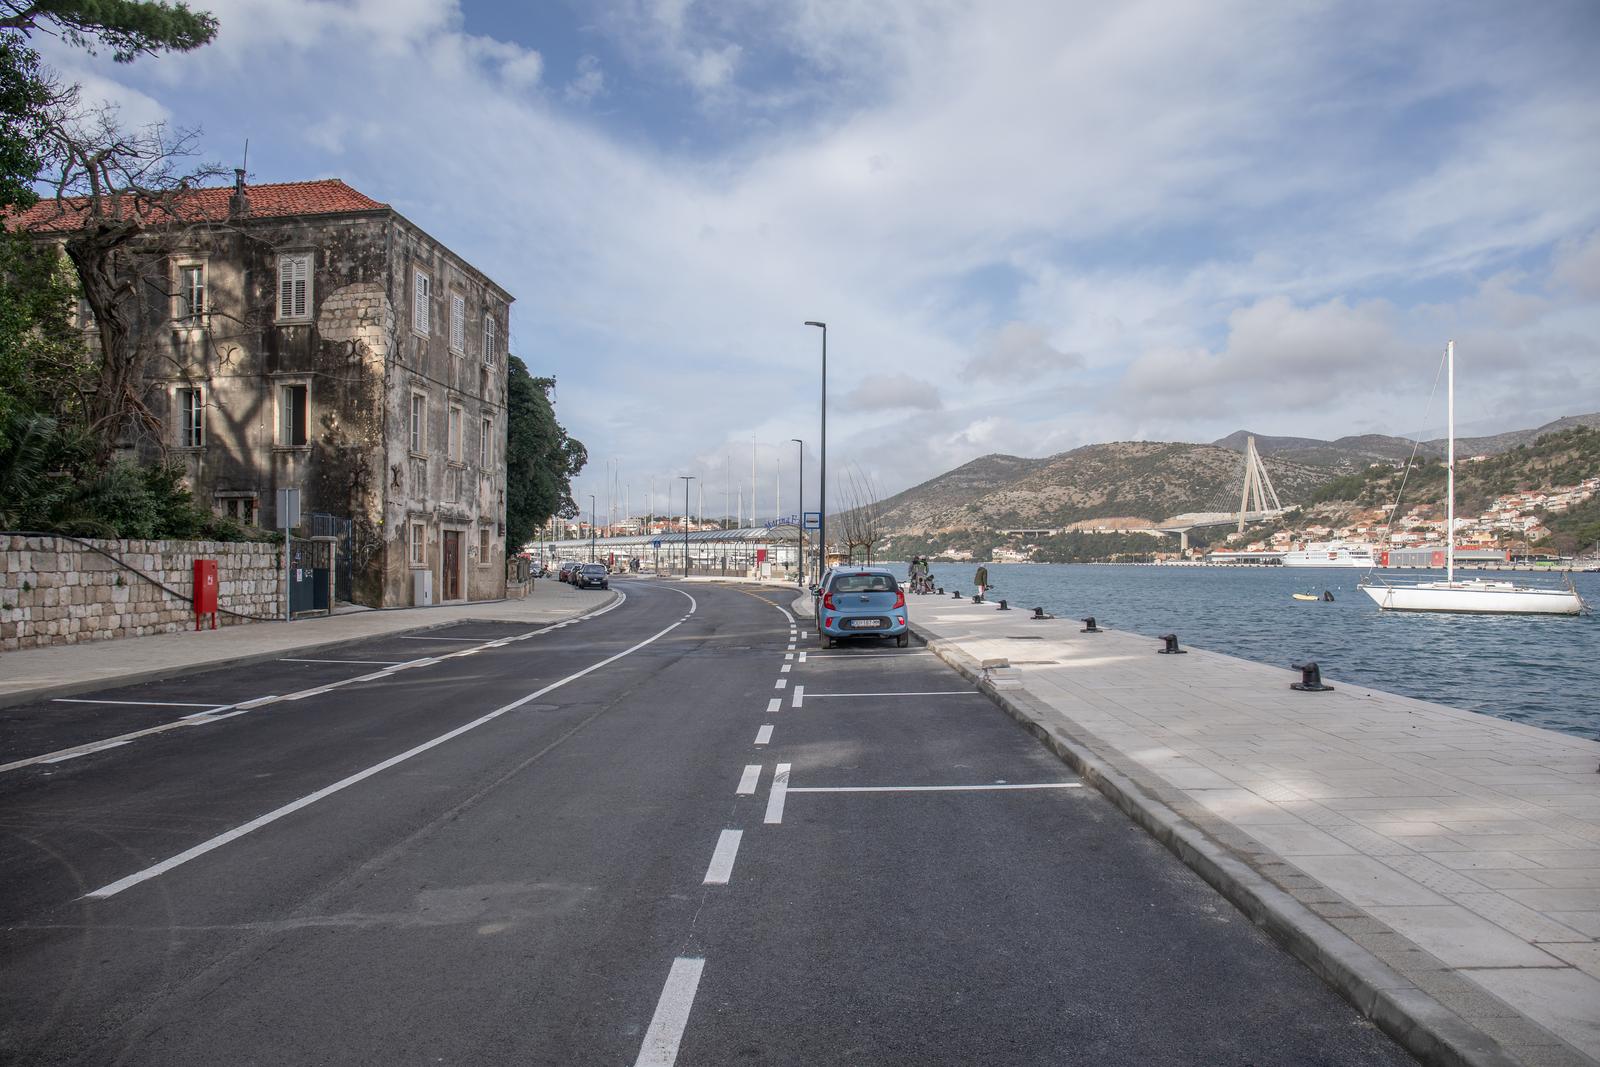 19.01.2024., Lapadska obala, Dubrovnik - Novoizgradjena prometnica otvorena je danas za promet. Rekonstrukcija i prosirenje Lapadske obale, kapitalna investicija financirana europskih i nacionalnim sredstvima najvece je ulaganje u prometnu infrastrukturu uzeg centra grada u posljednjih pedesetak godina.   Photo: Grgo Jelavic/PIXSELL